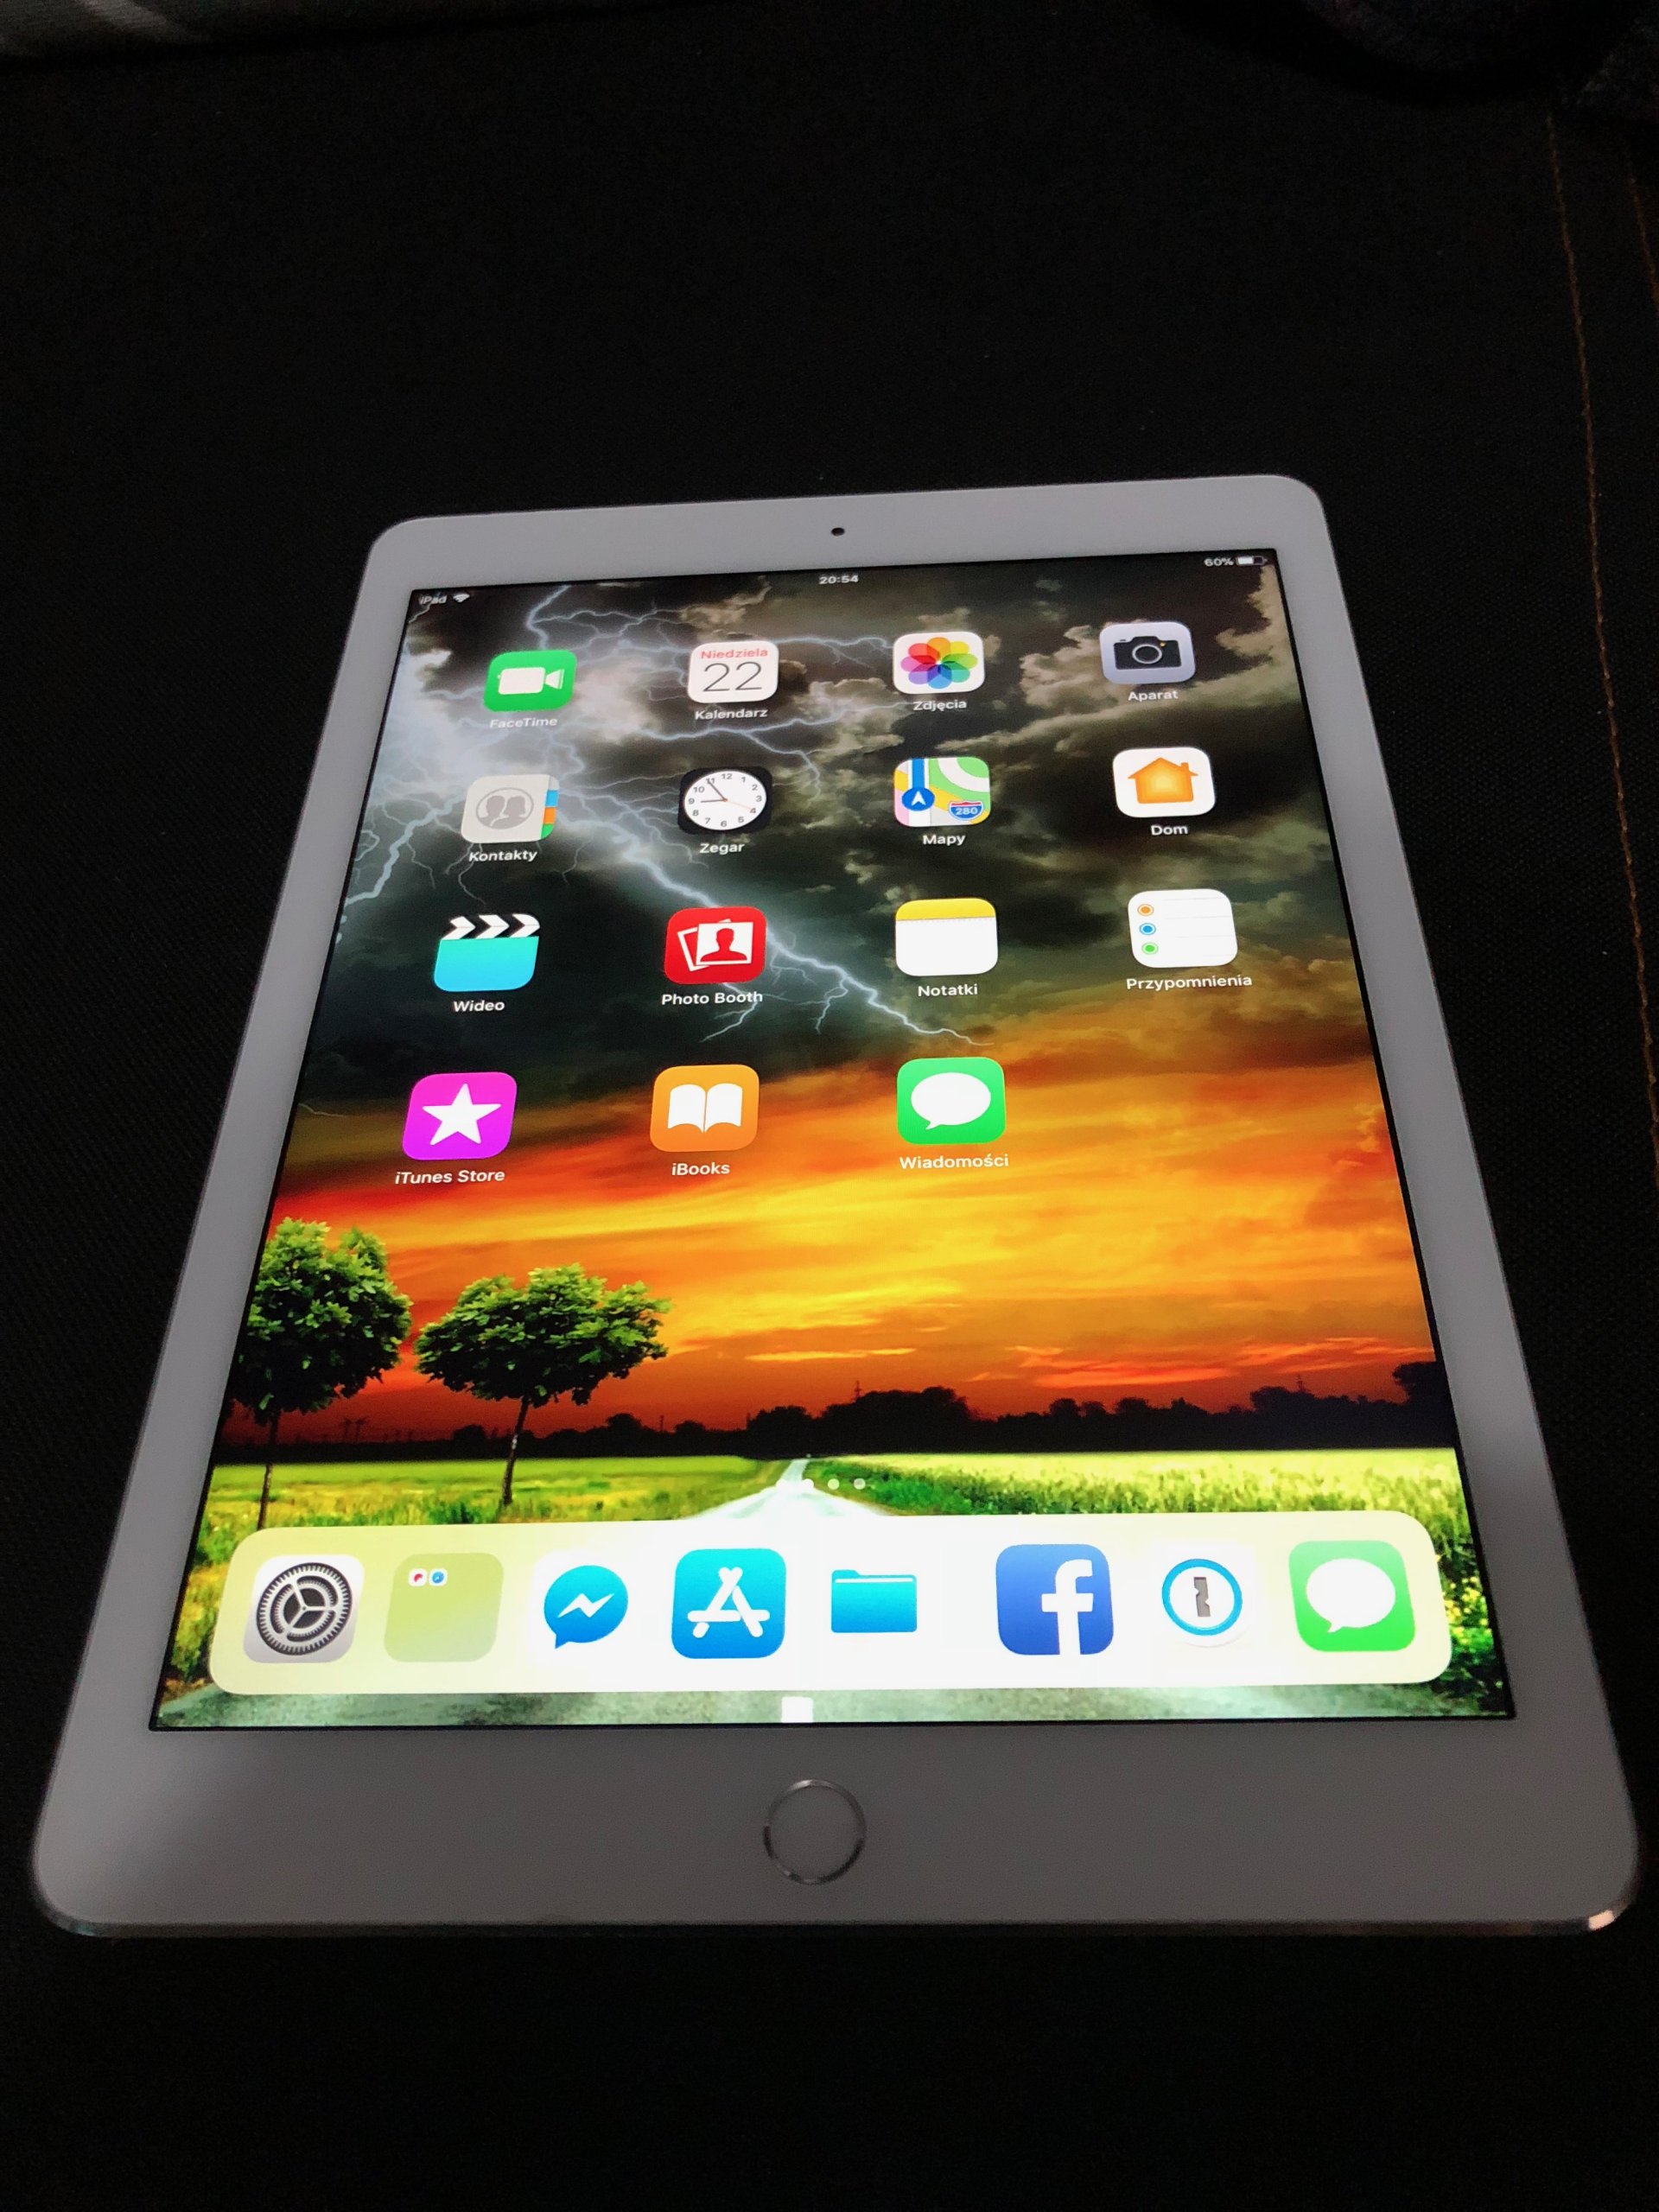 Apple iPad Air 2 64GB WiFi Only 9.7" Retina White/Silver MH2N2LL/A 2014 ...